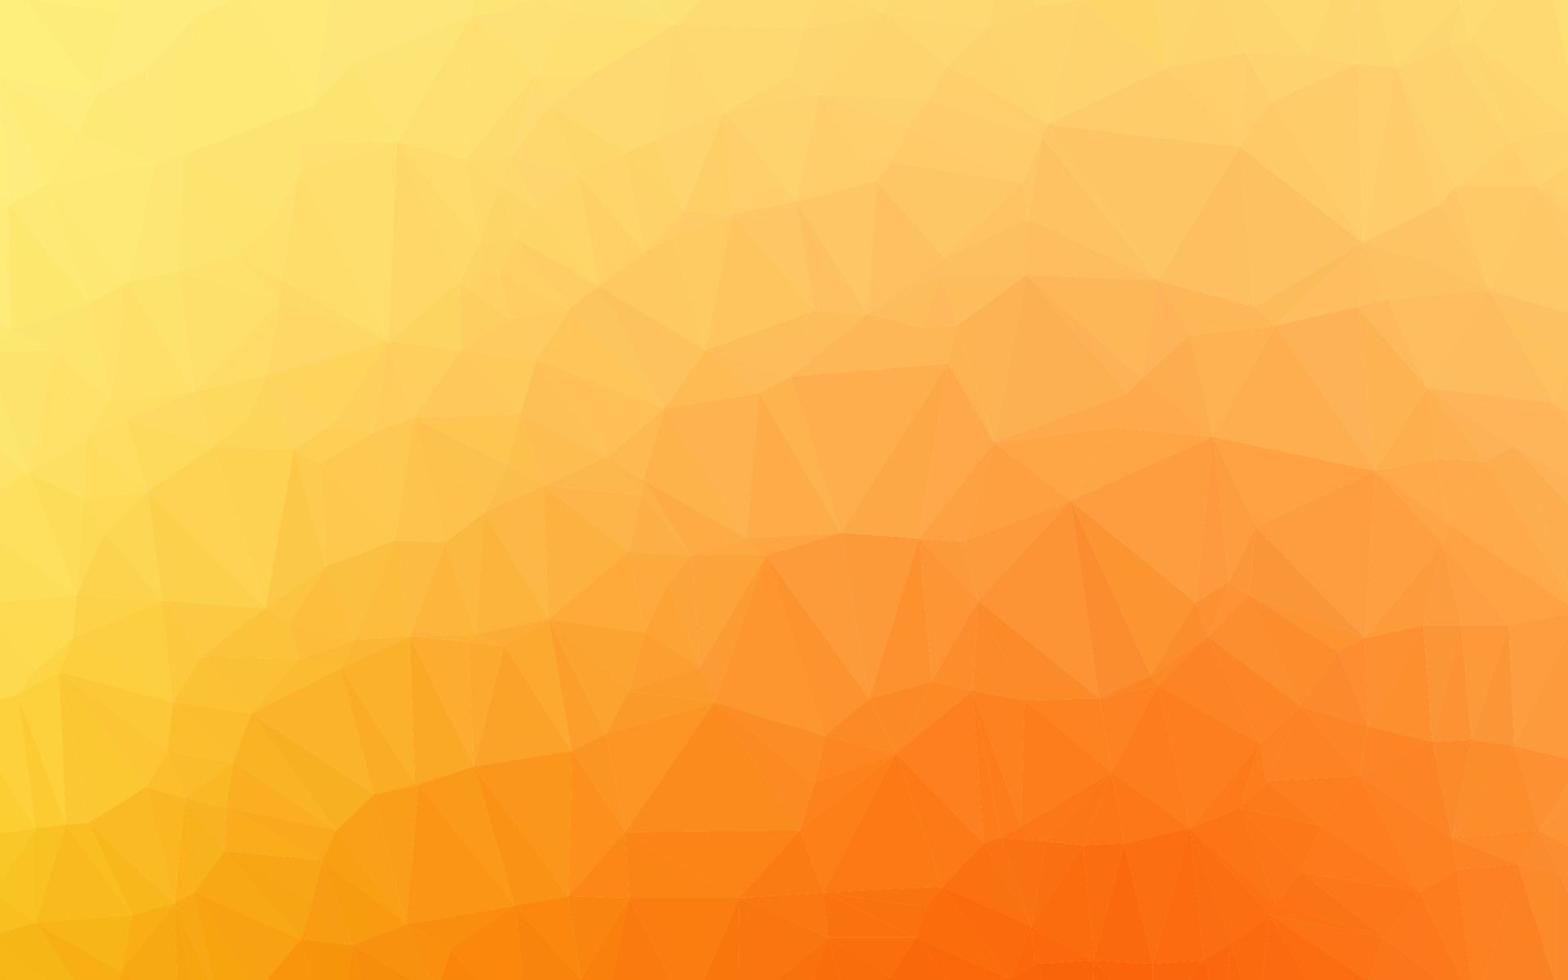 hellgelber, orangefarbener Vektor leuchtendes dreieckiges Muster.